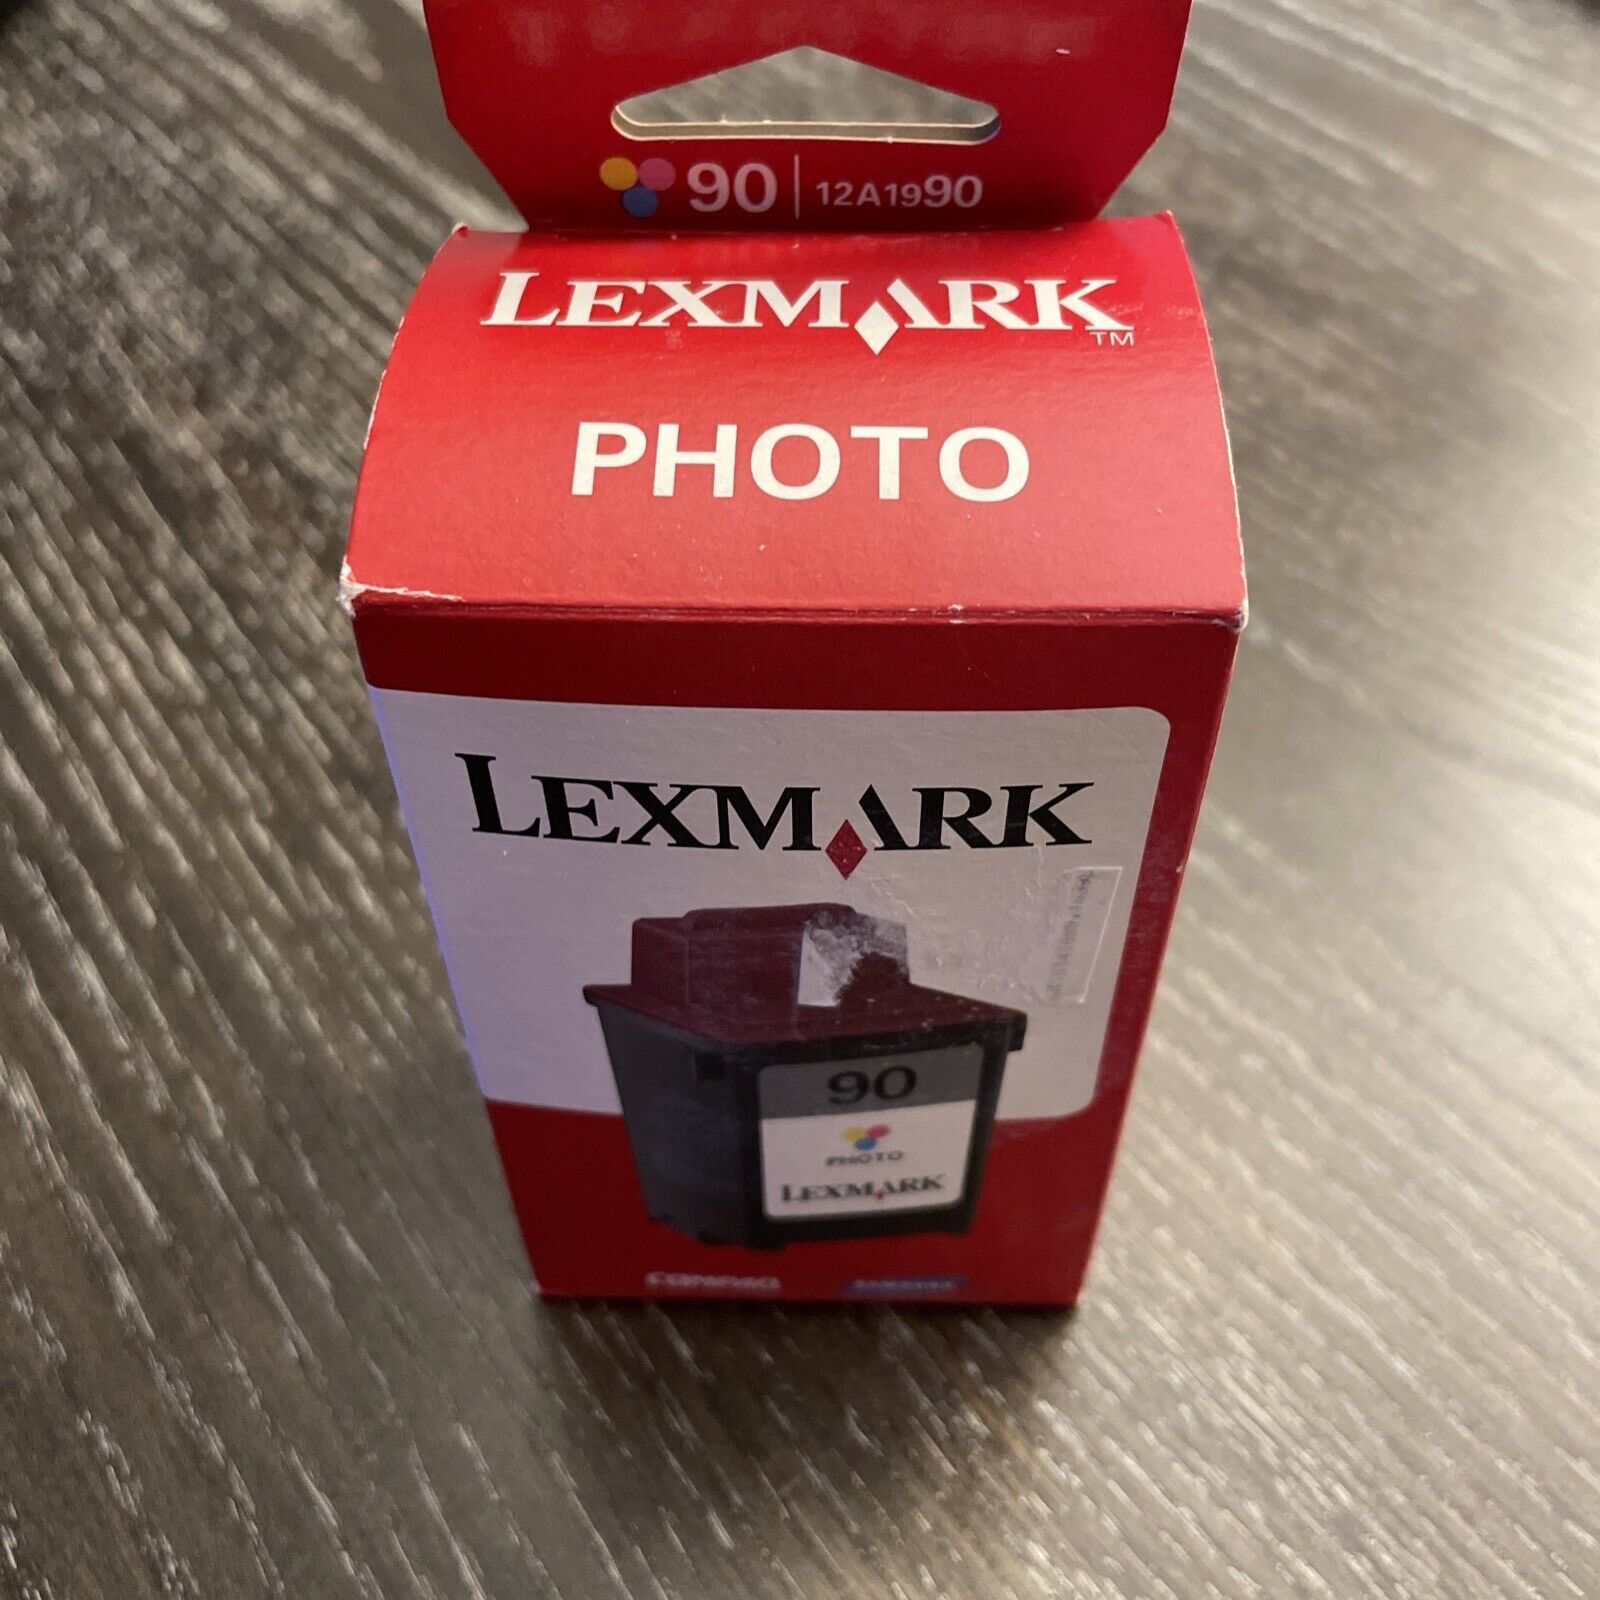 Lexmark #90 Photo Inkjet Cartridge - New and Sealed